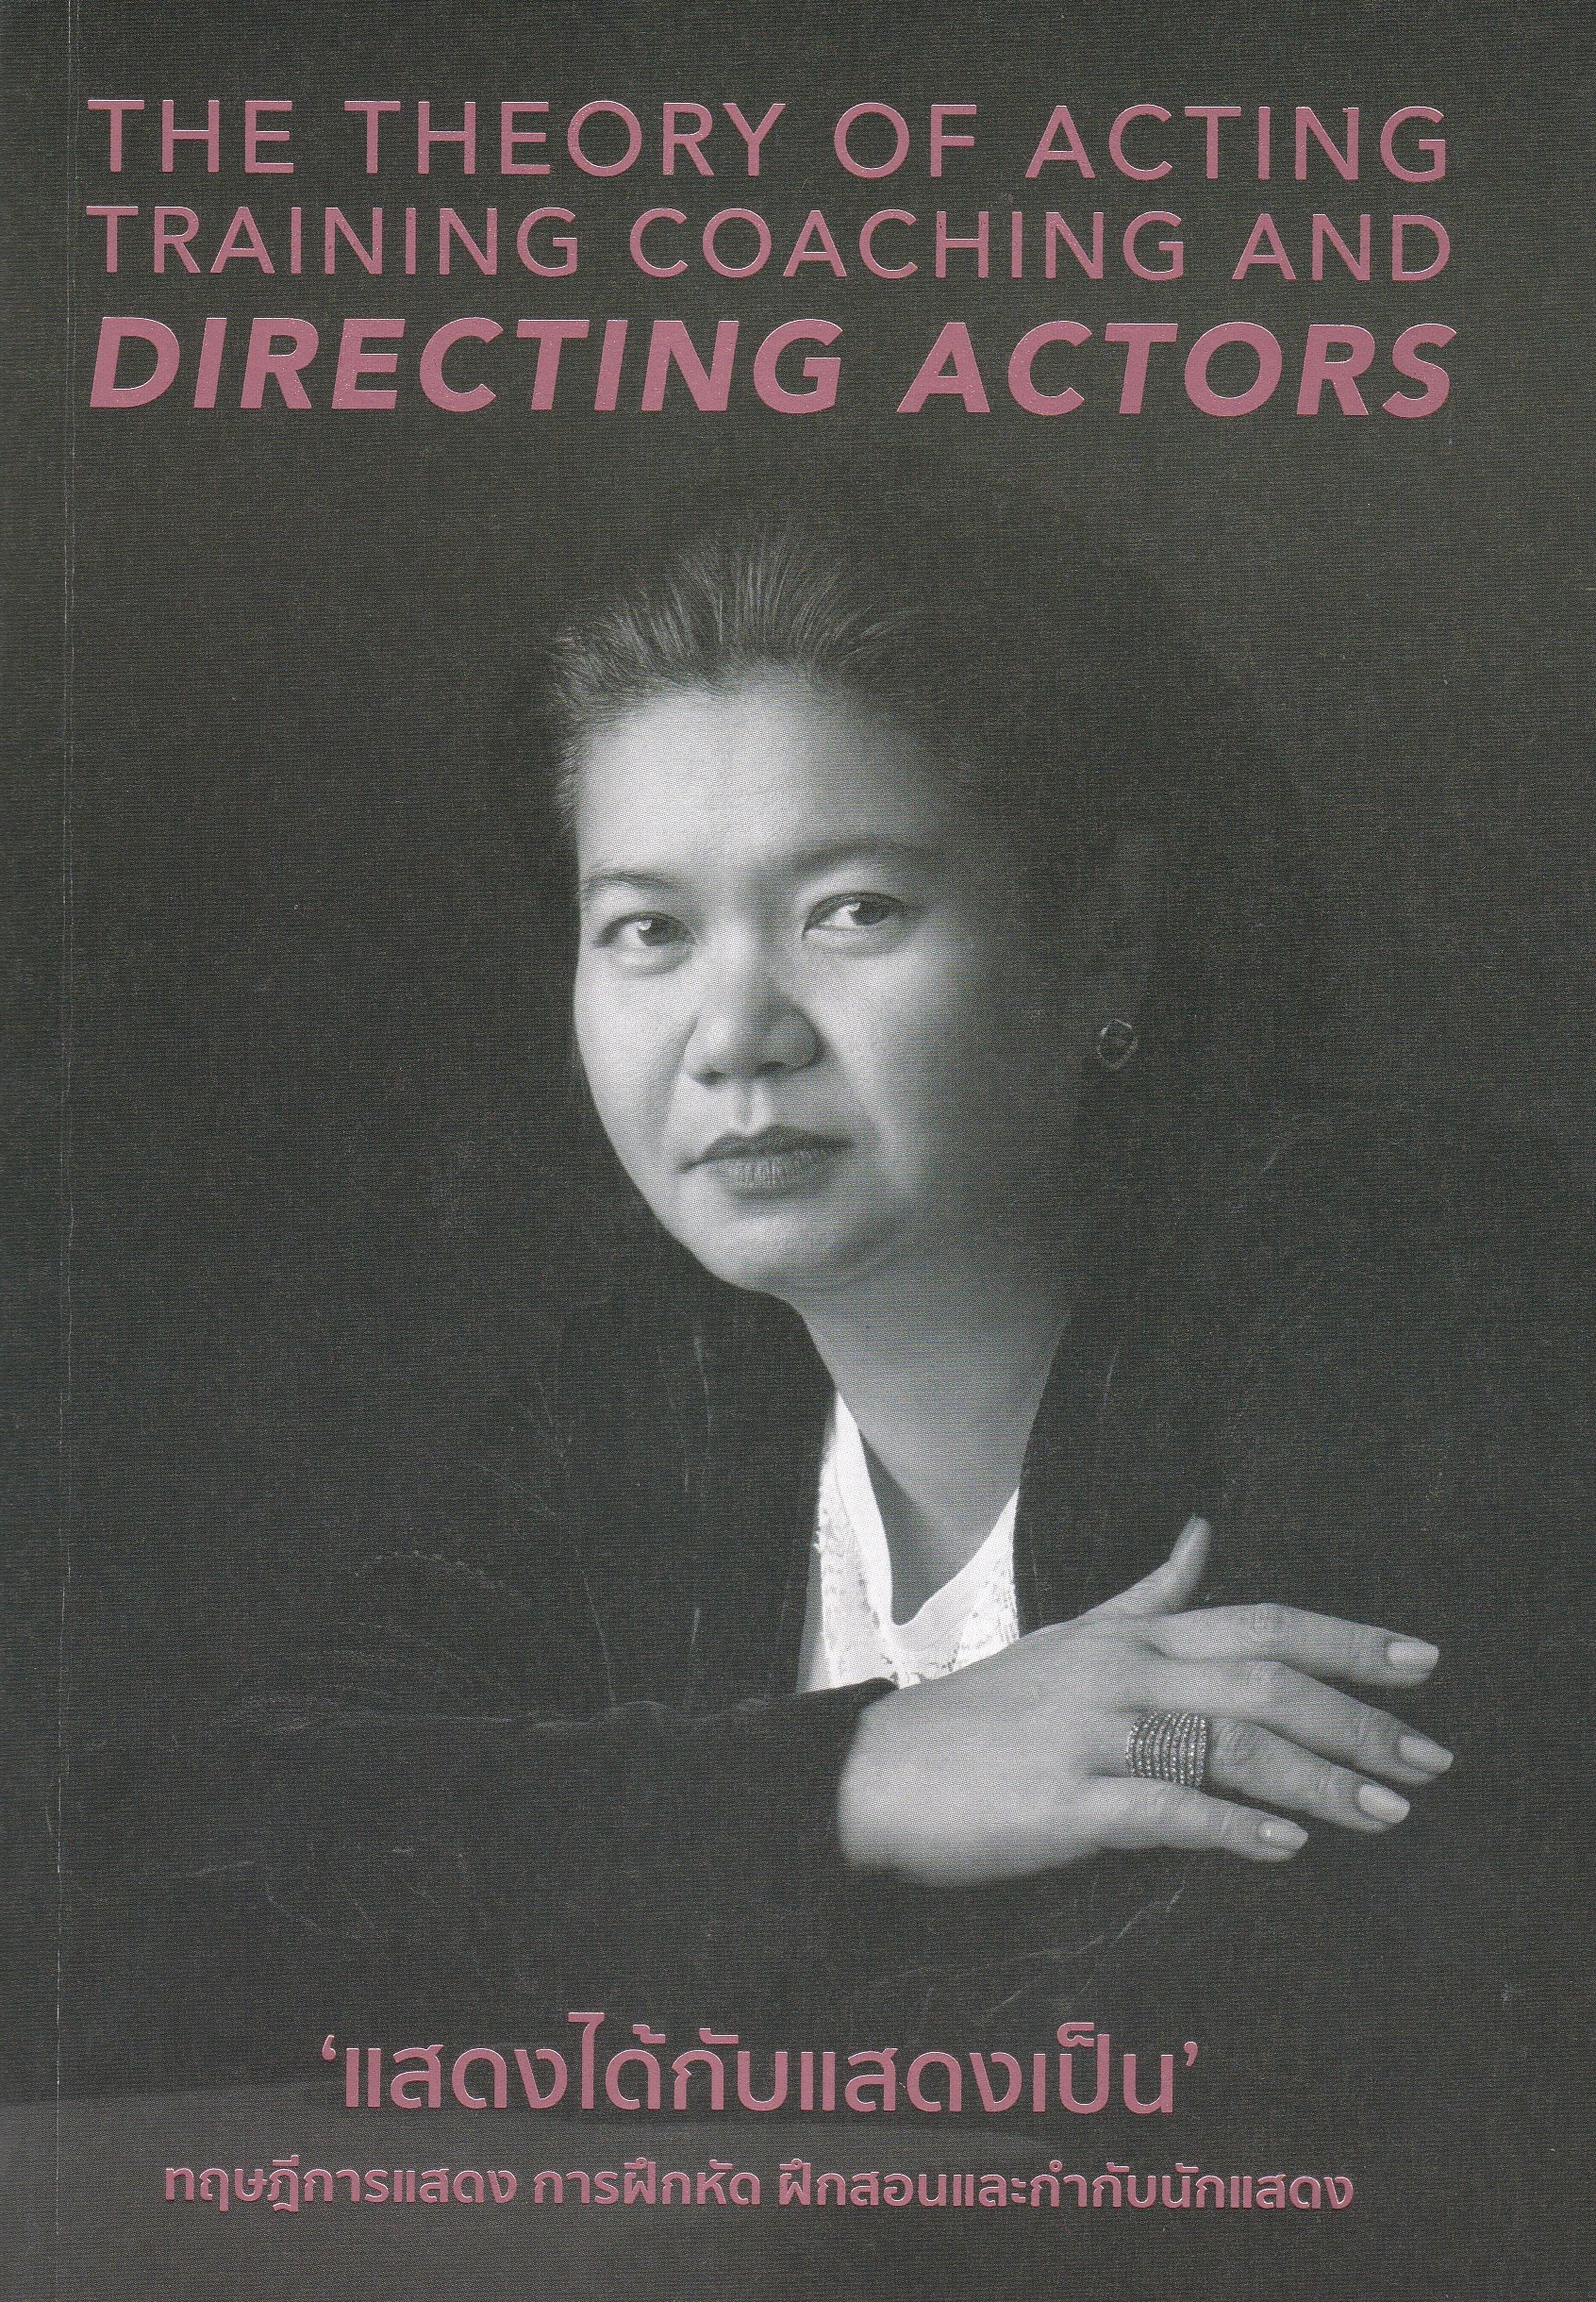 แสดงได้กับแสดงเป็น :ทฤษฎีการแสดง การฝึกหัด ฝึกสอนและกำกับนักแสดง